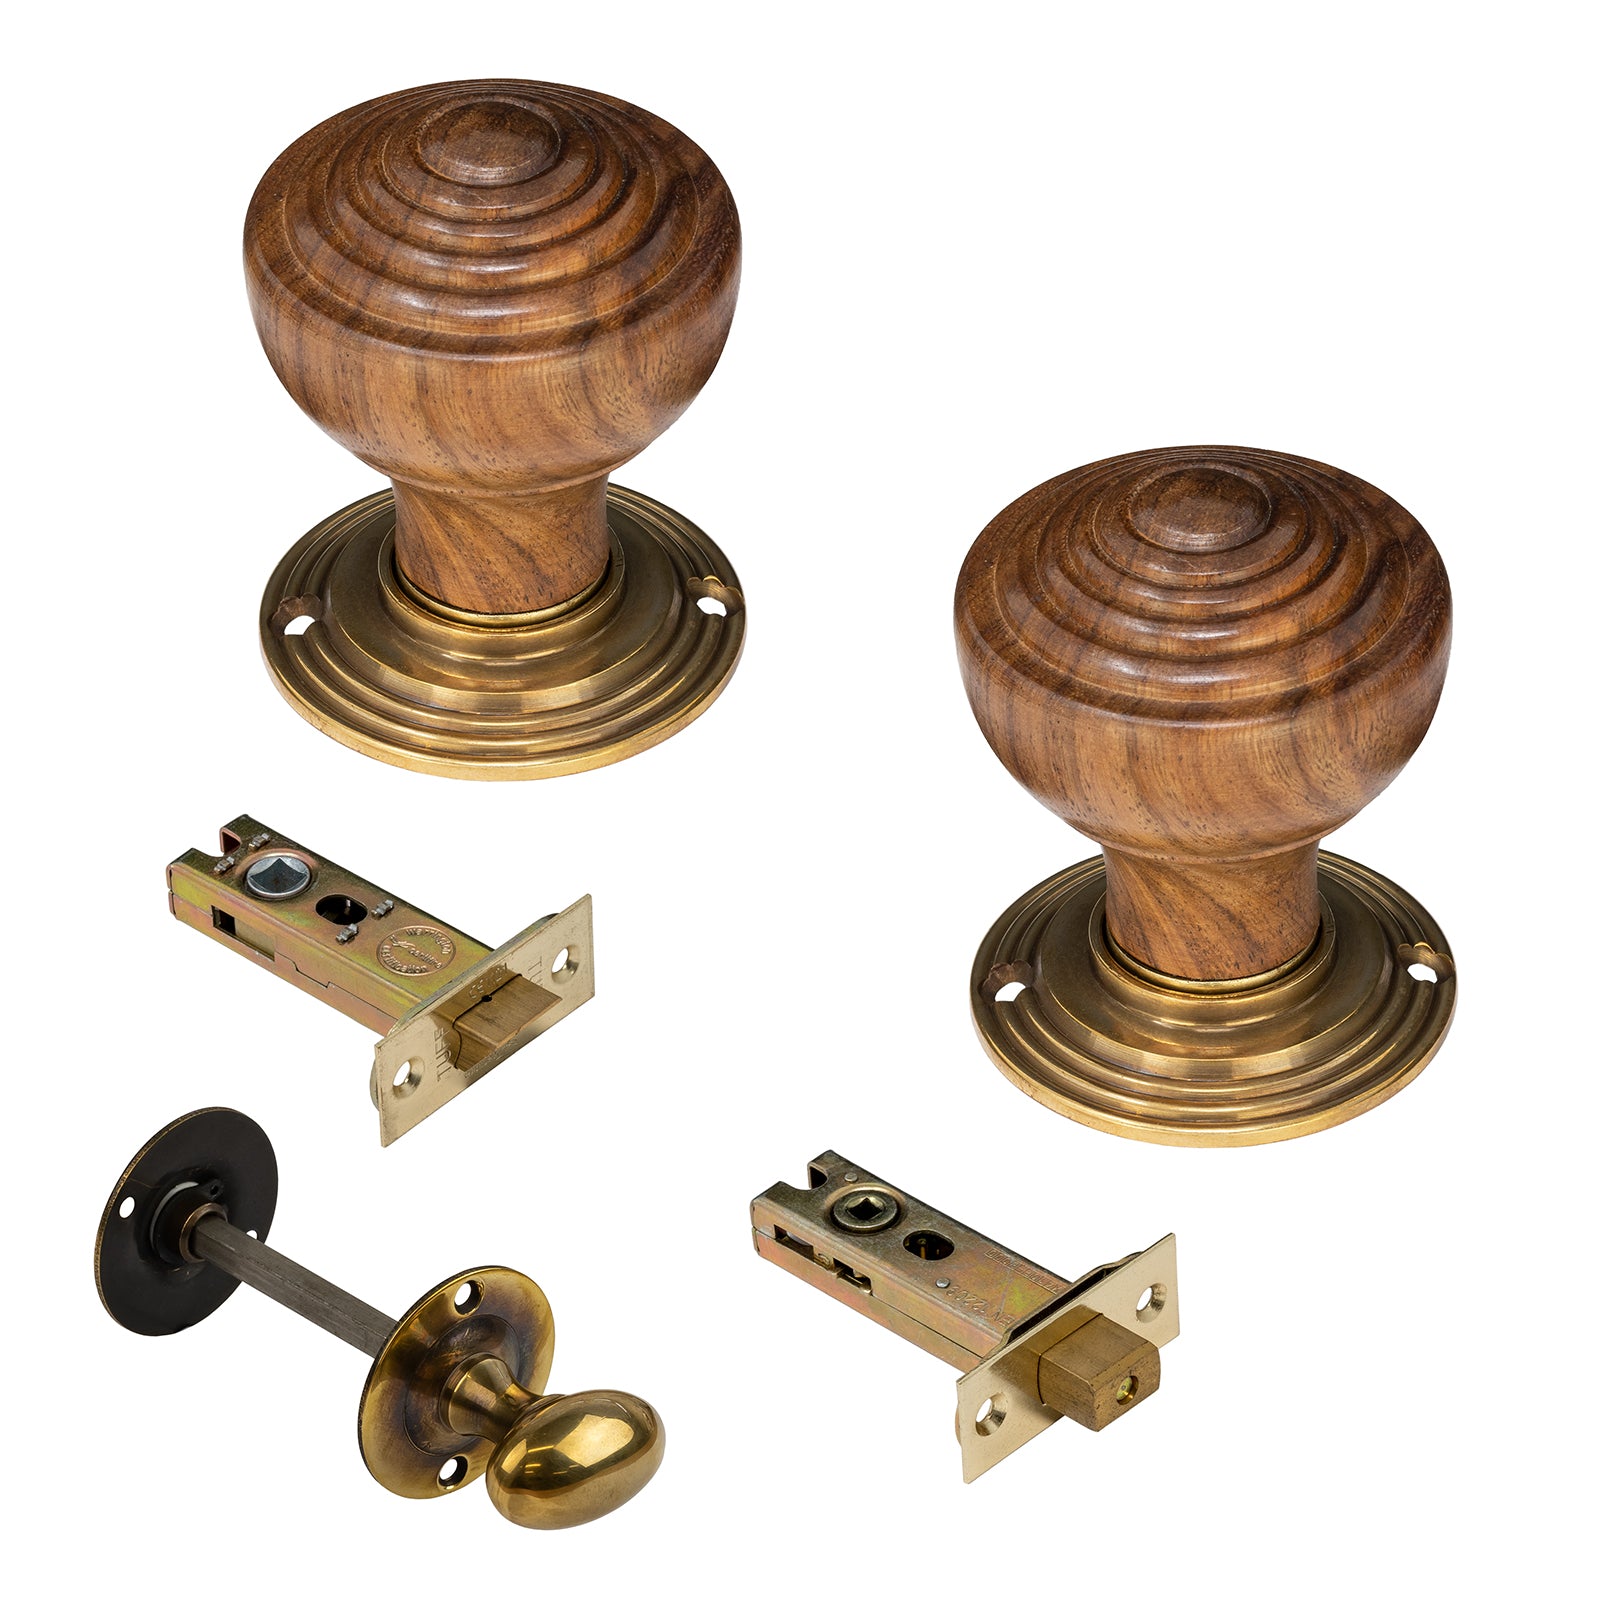 Rosewood door knobs 3 inch bathroom set